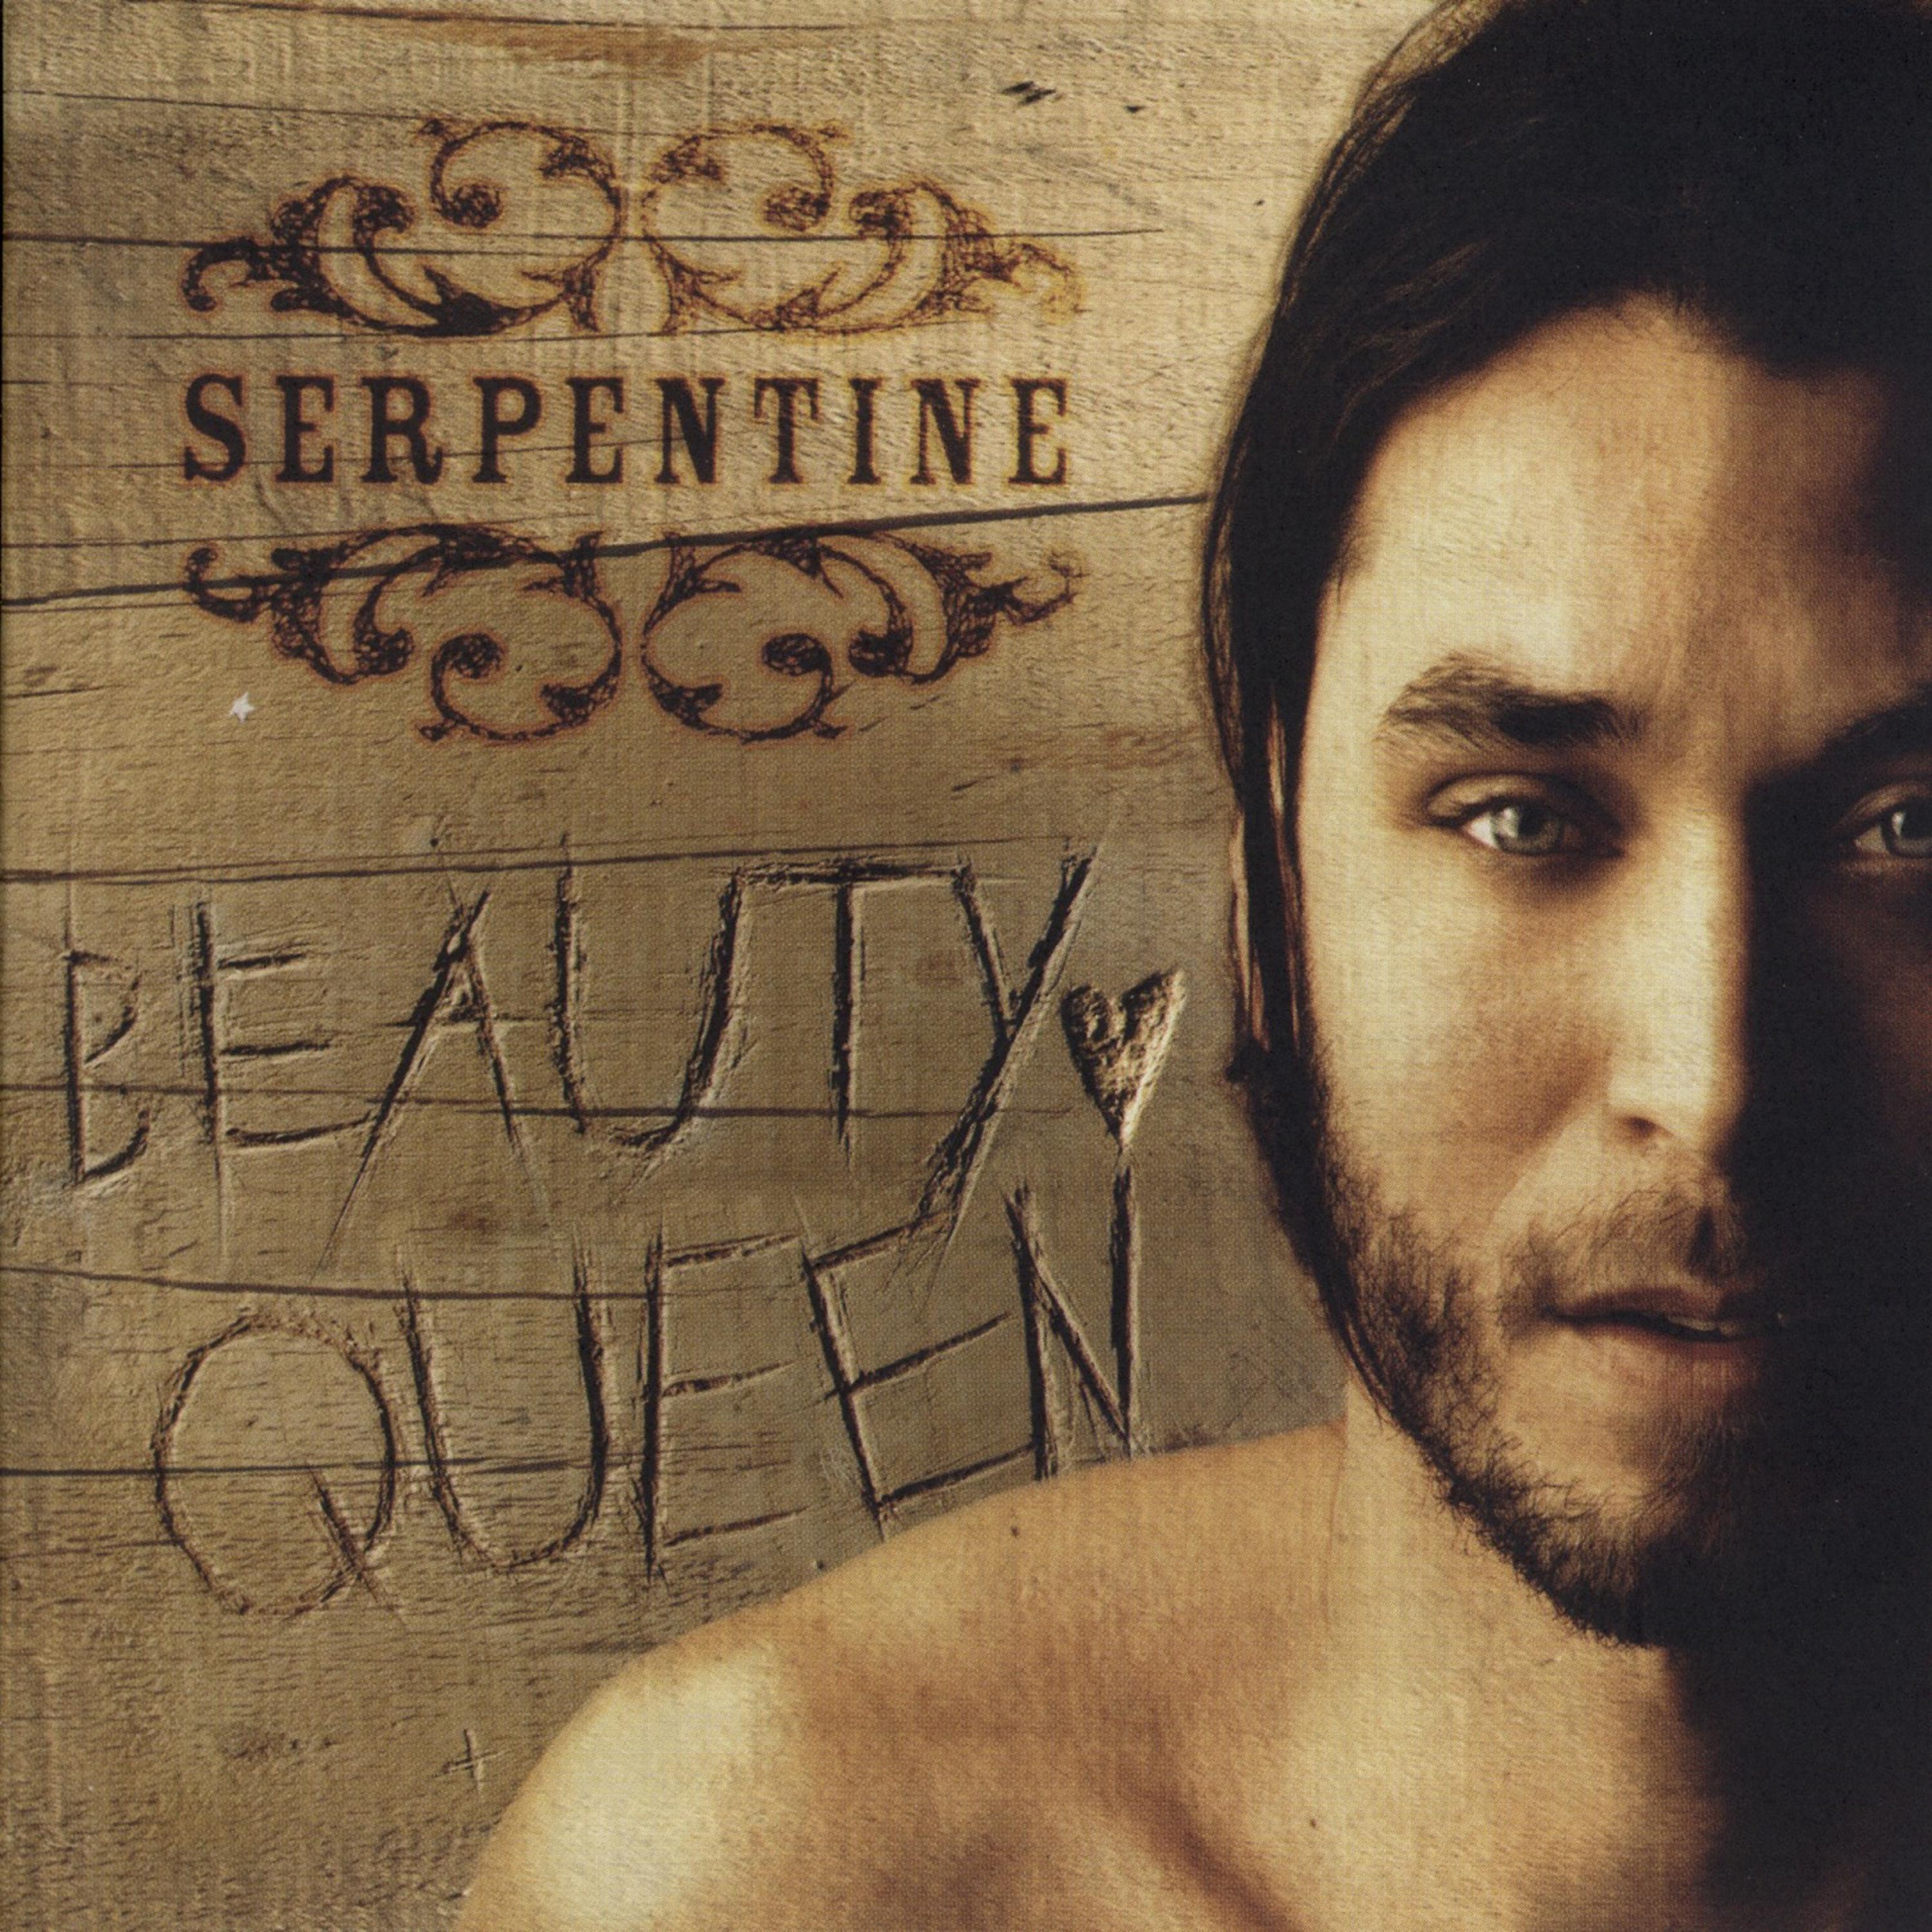 Постер альбома Beauty Queen